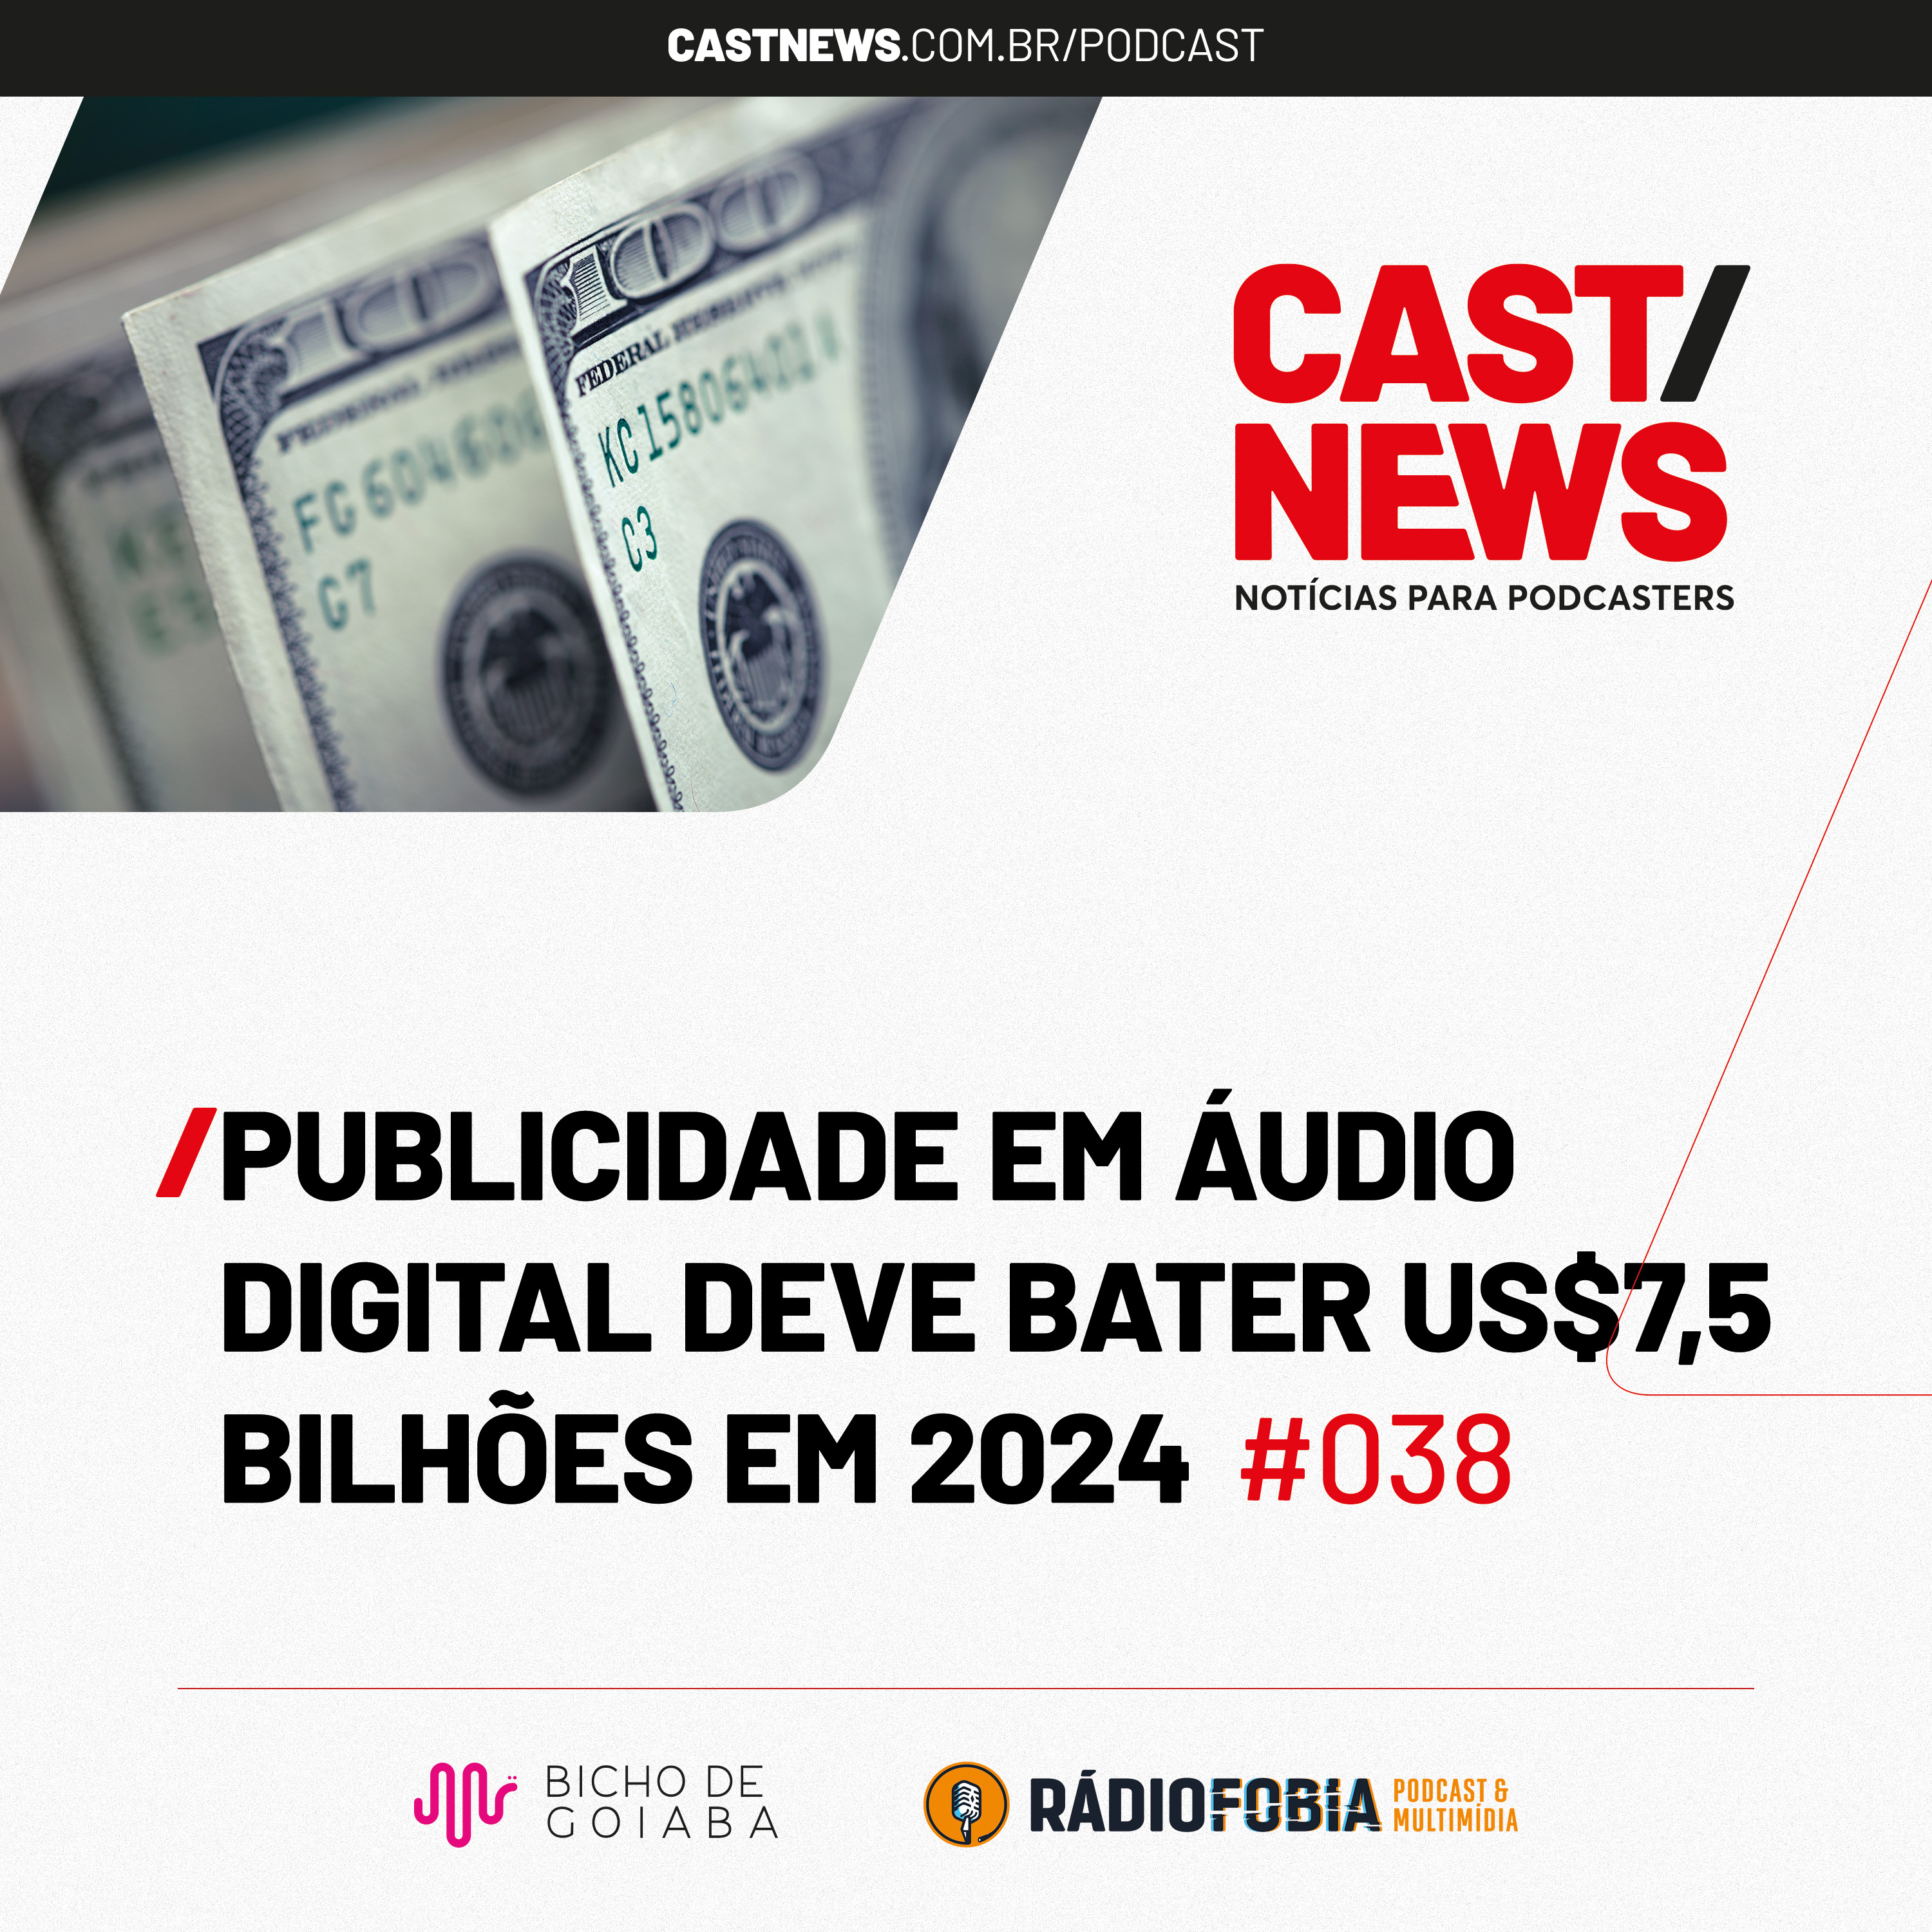 CASTNEWS #038 - Publicidade em áudio digital deve bater US$7,5 bilhões em 2024